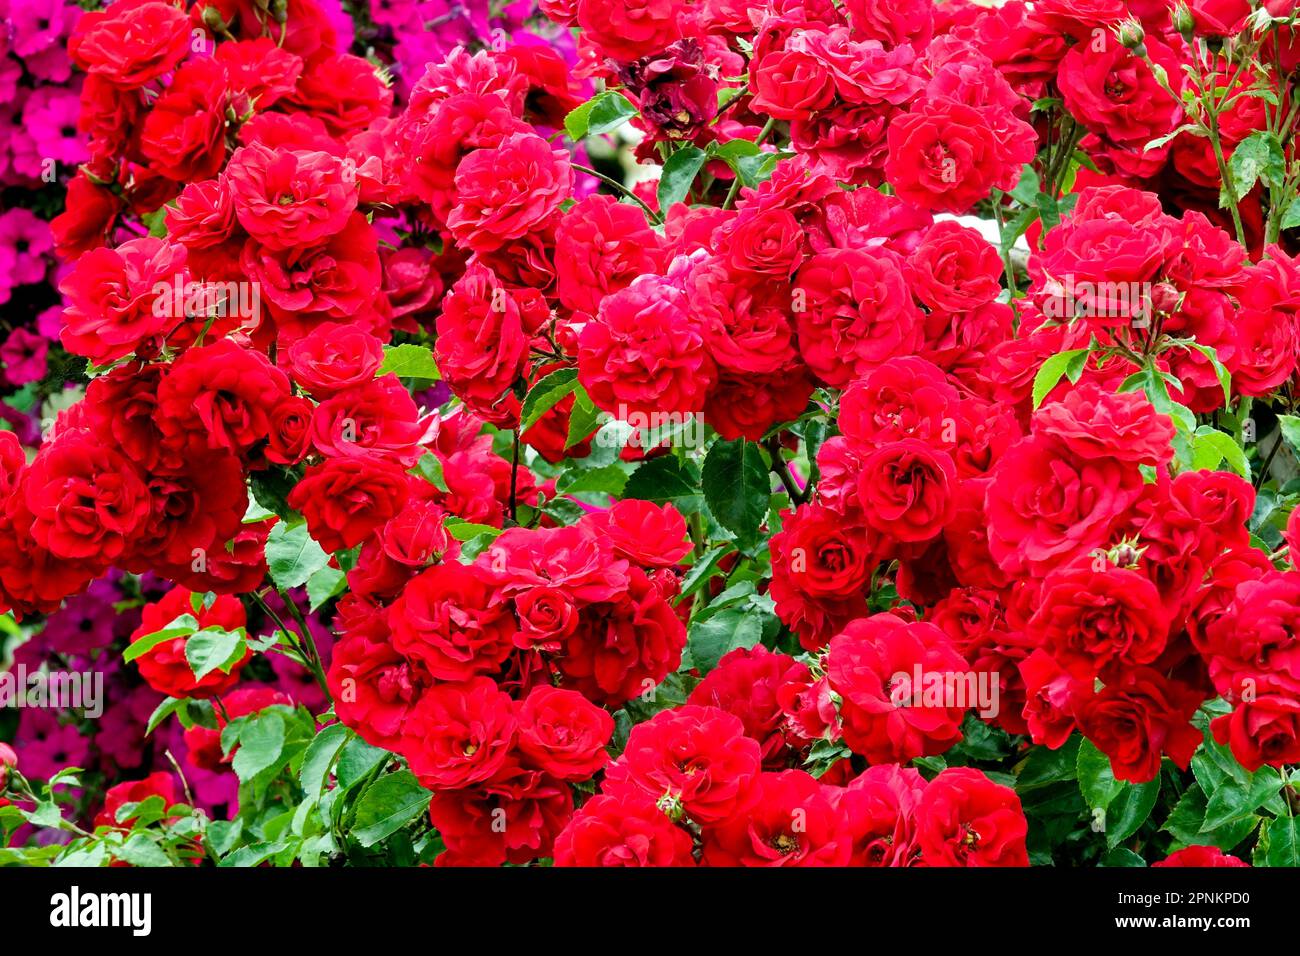 Red flowering rose bush Shrub roses Stock Photo